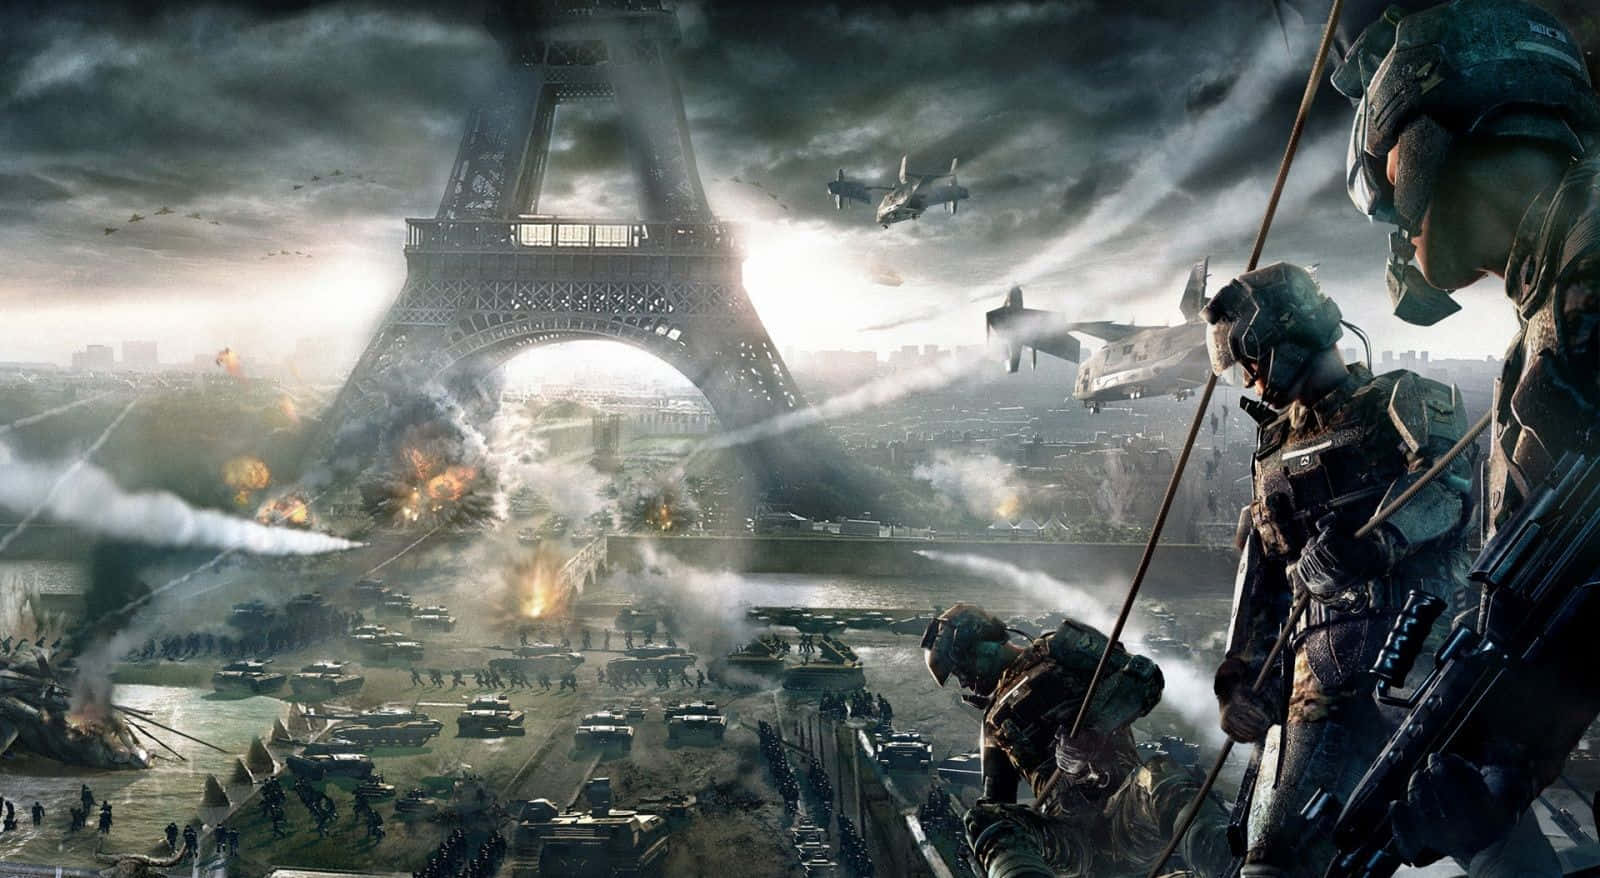 Intense battle scene in a digital war game Wallpaper